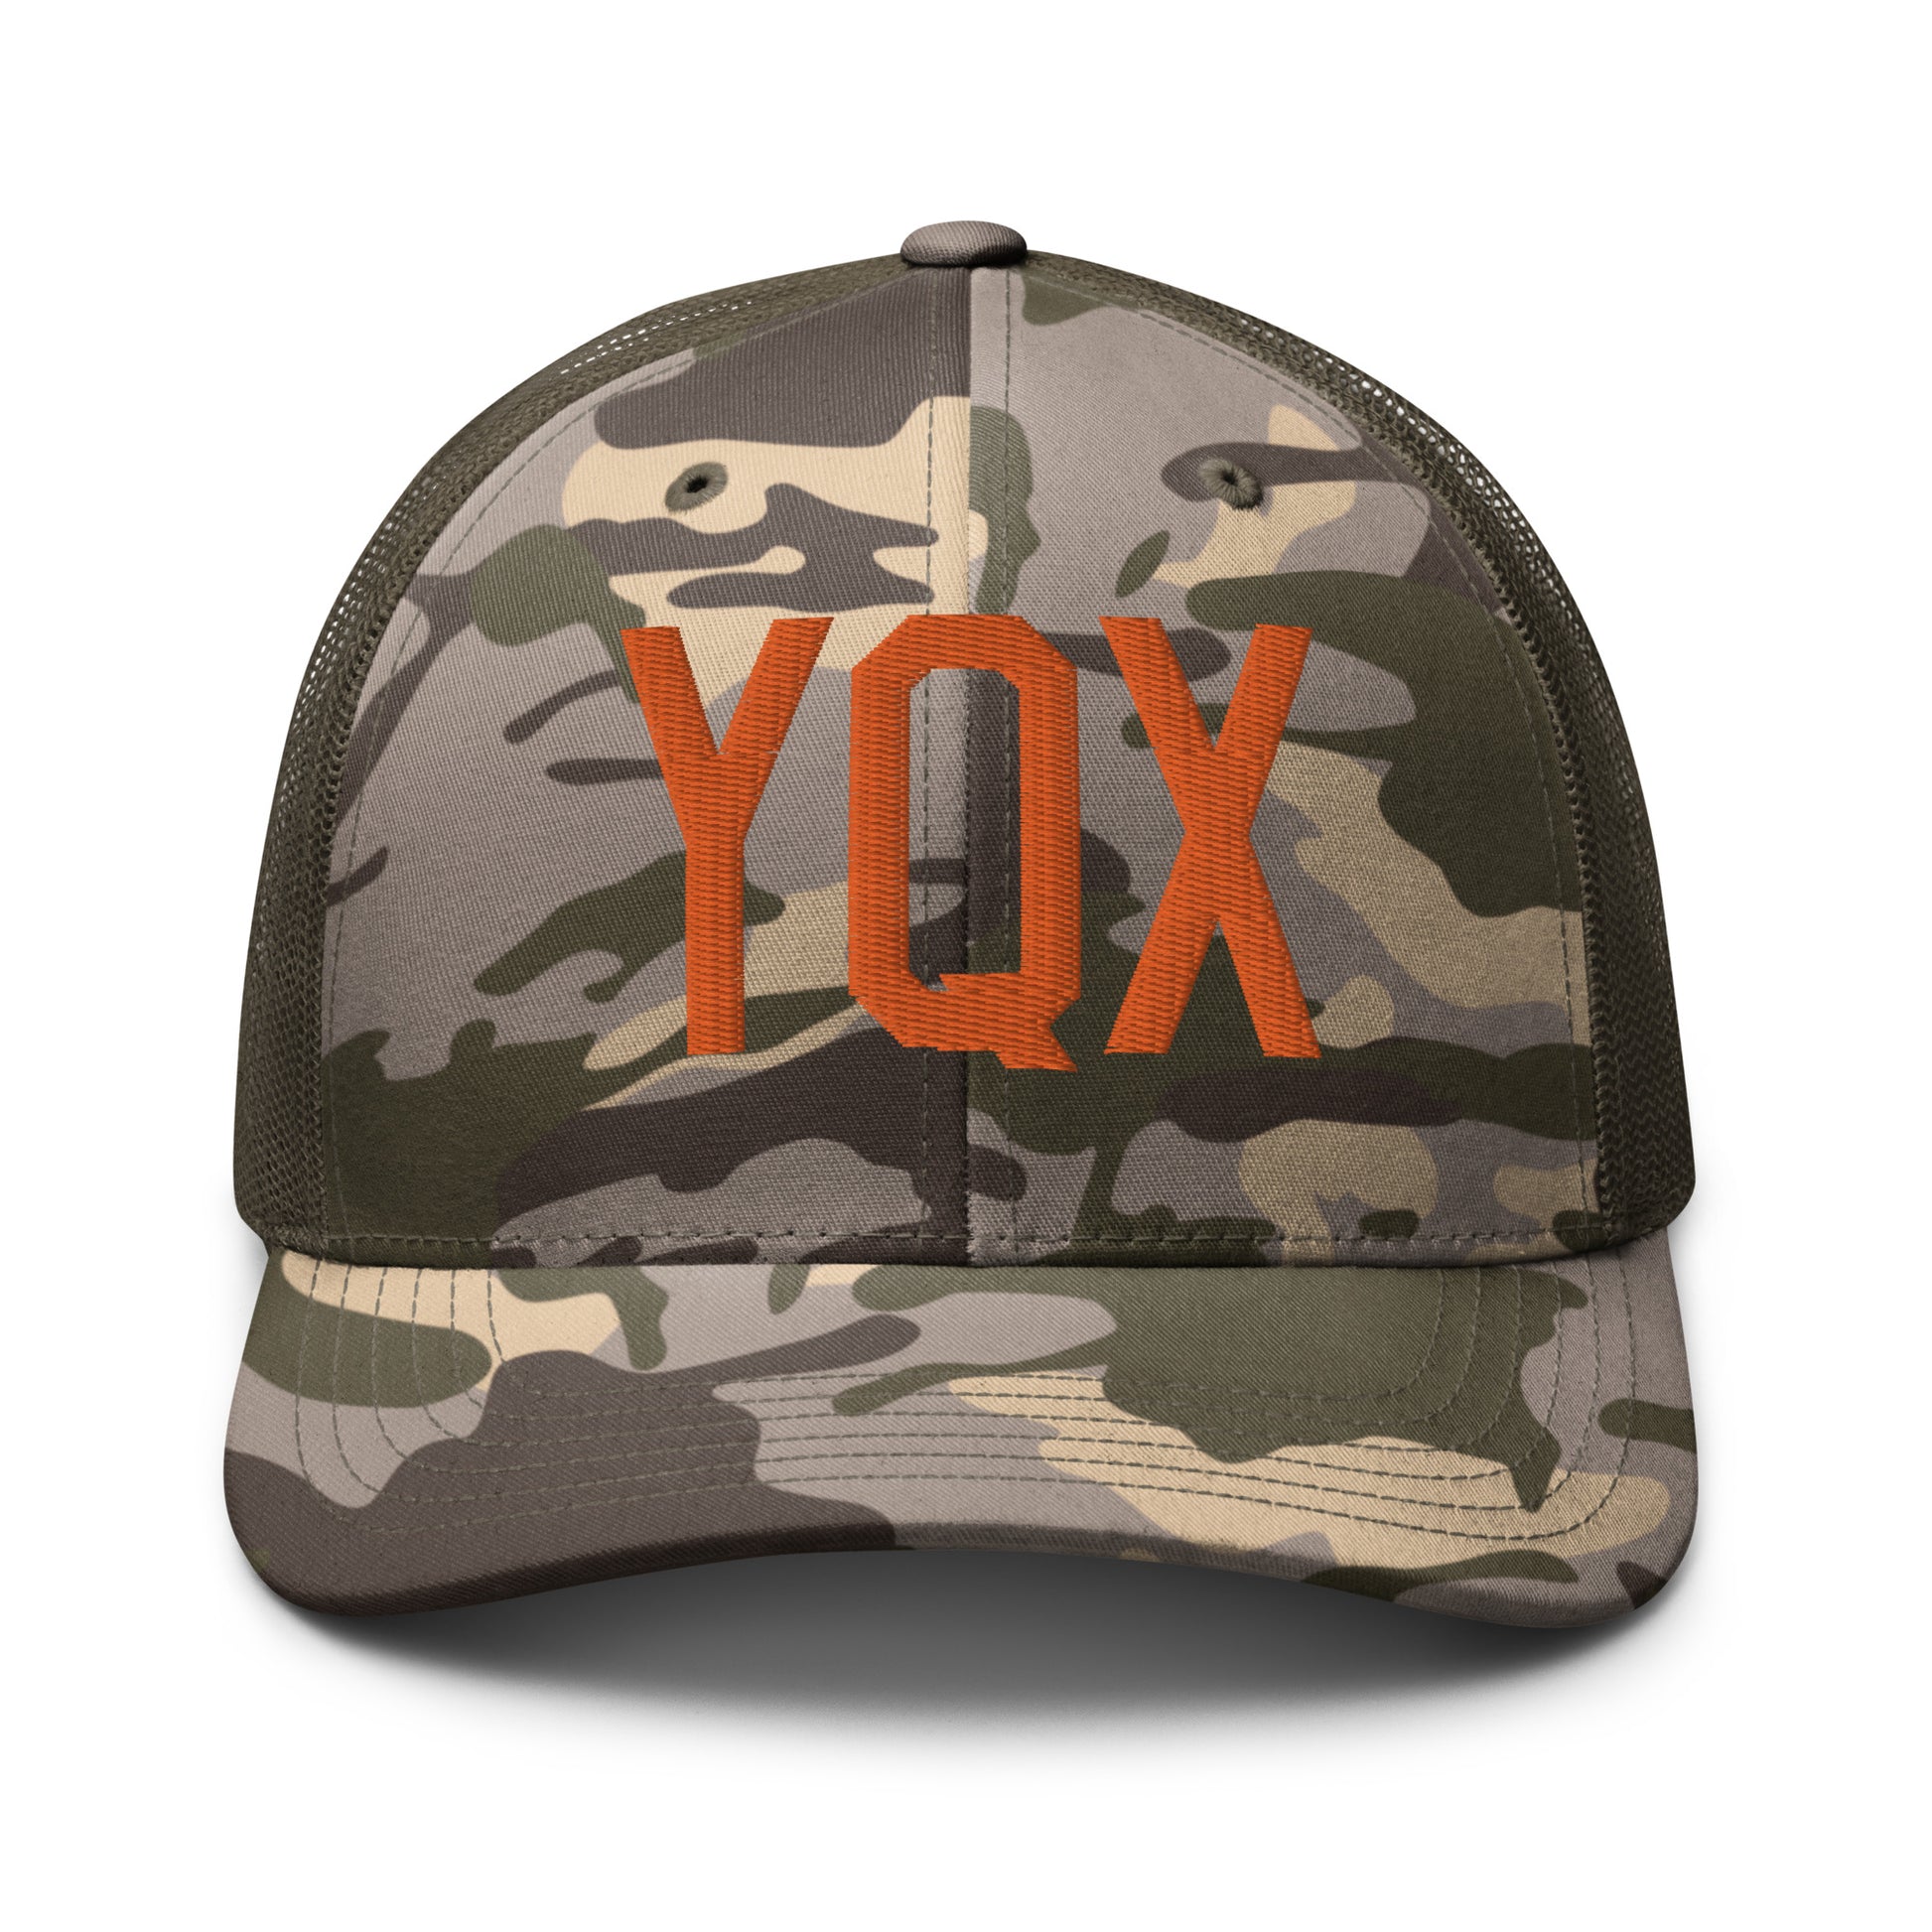 Airport Code Camouflage Trucker Hat - Orange • YQX Gander • YHM Designs - Image 17